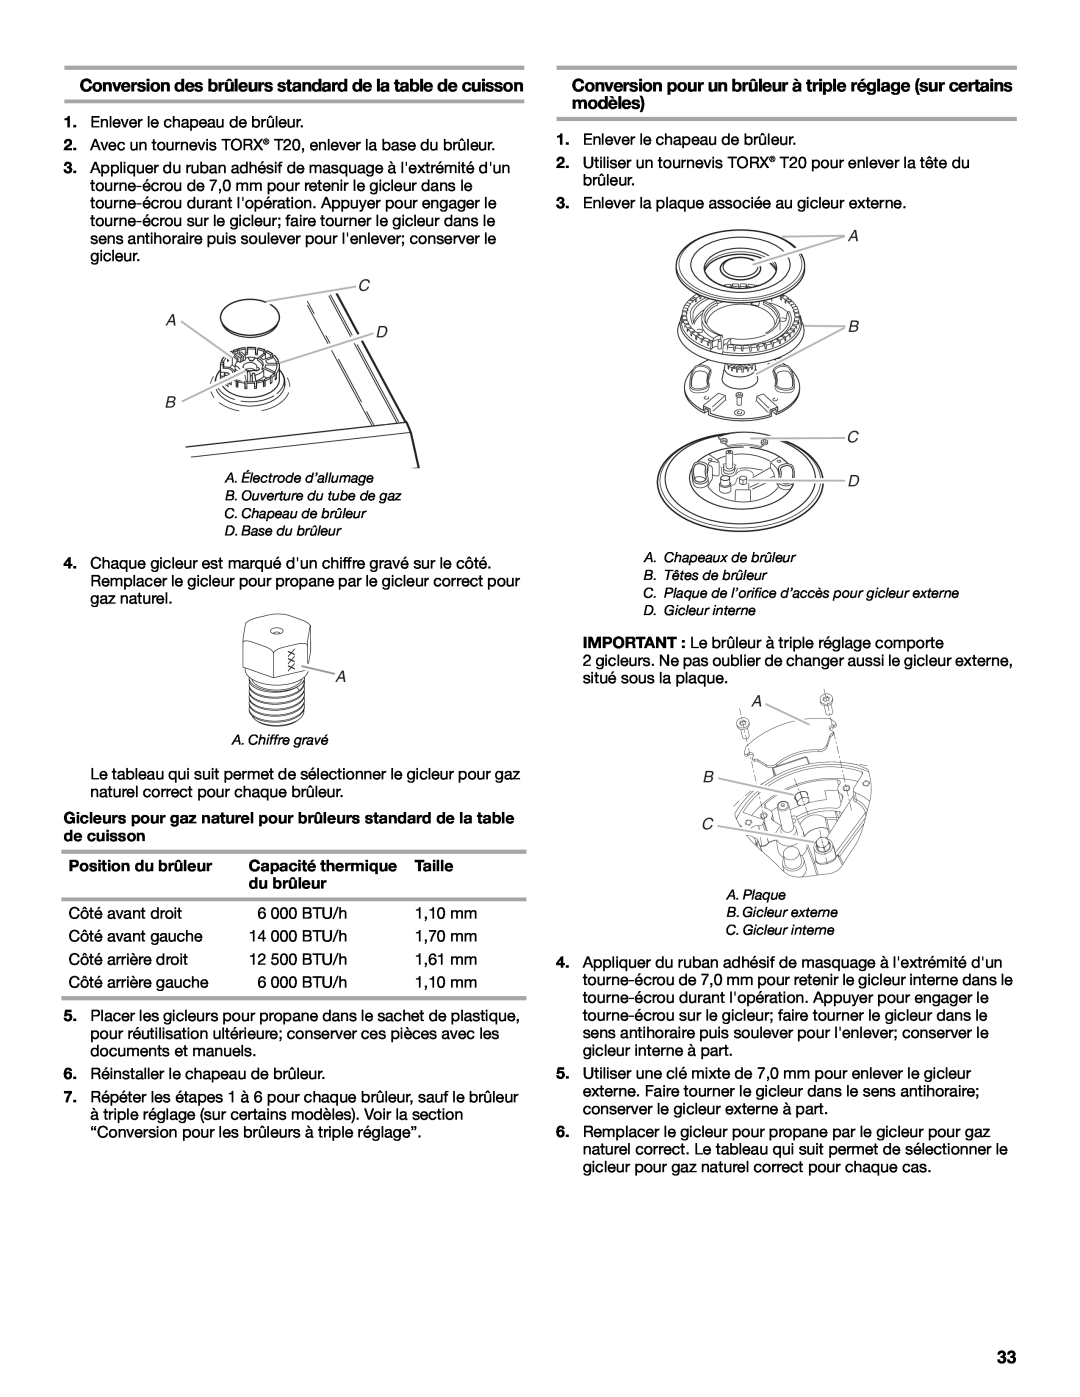 Whirlpool Slide-In Electric Ranges Conversion des brûleurs standard de la table de cuisson, C A D B, Position du brûleur 